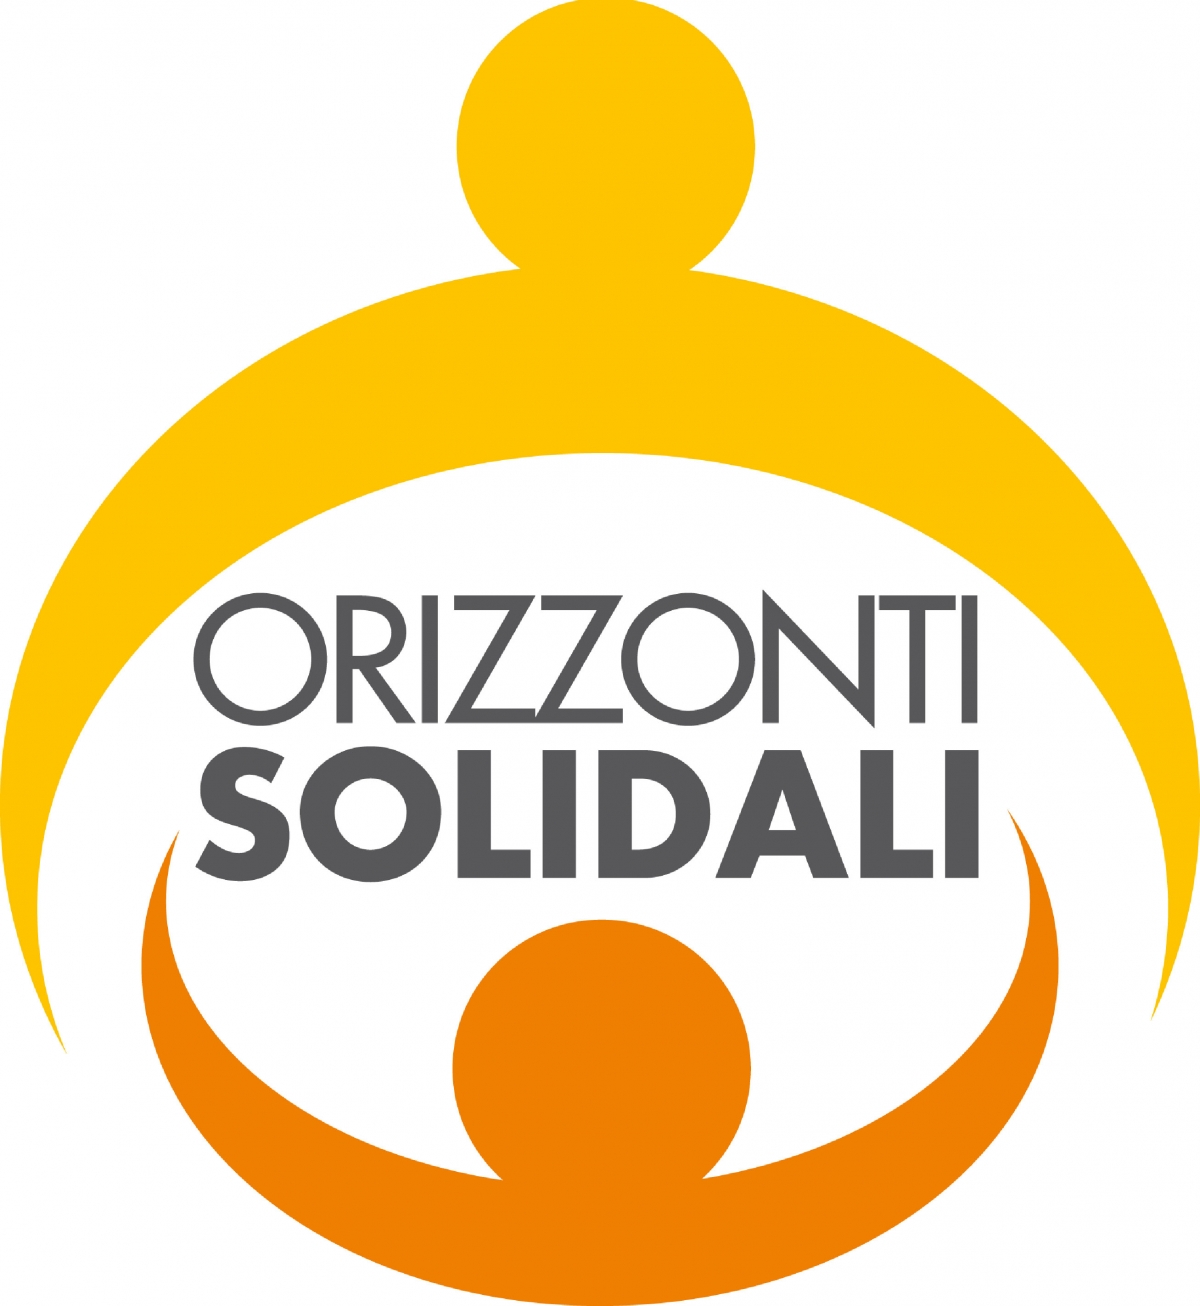 ‘Orizzonti solidali’, aumenta il numero di partecipazioni: 230 progetti e richieste di finanziamento per 5,7 milioni di euro